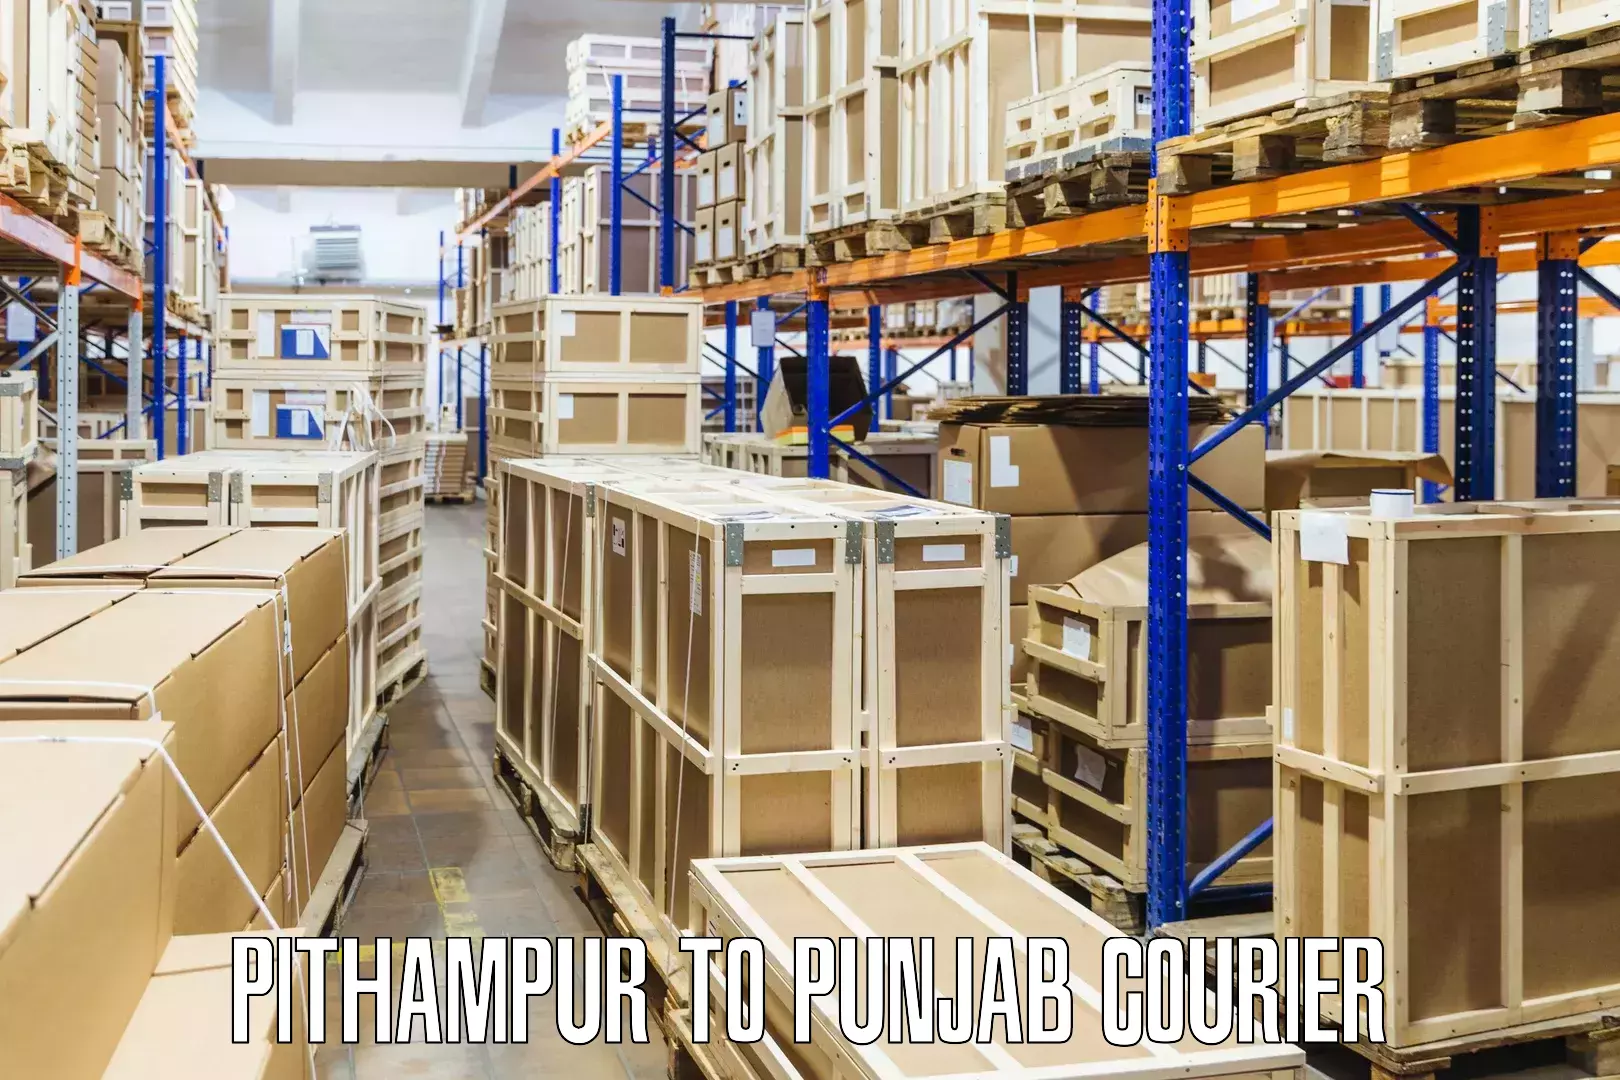 Express shipping in Pithampur to Jalandhar